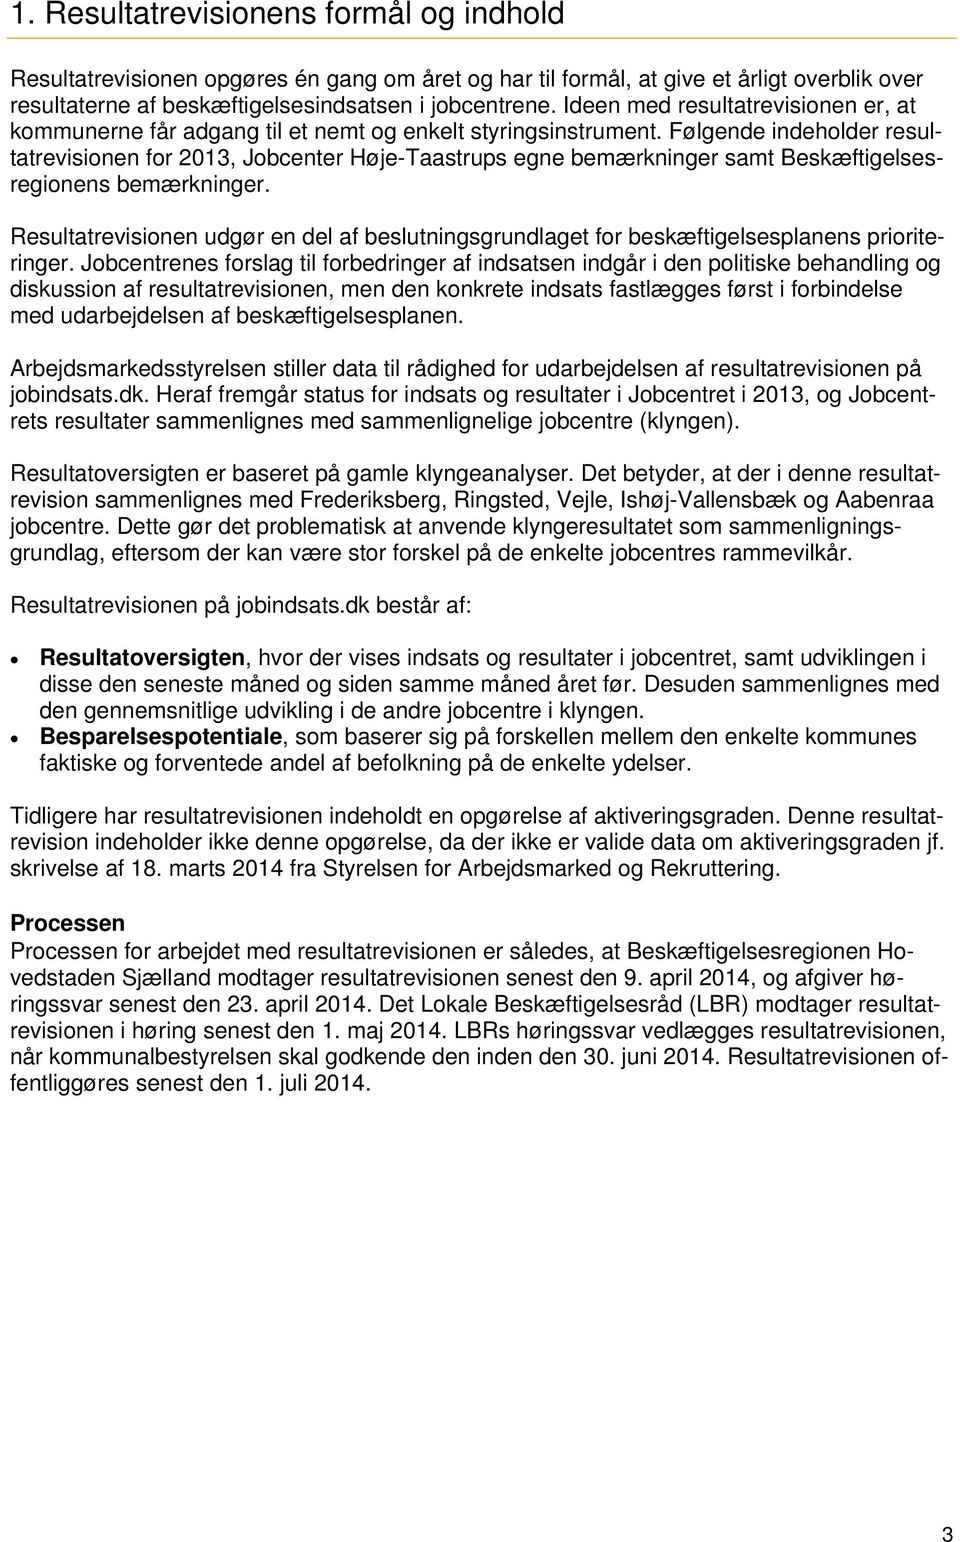 Følgende indeholder resultatrevisionen for, Jobcenter Høje-Taastrups egne bemærkninger samt Beskæftigelsesregionens bemærkninger.